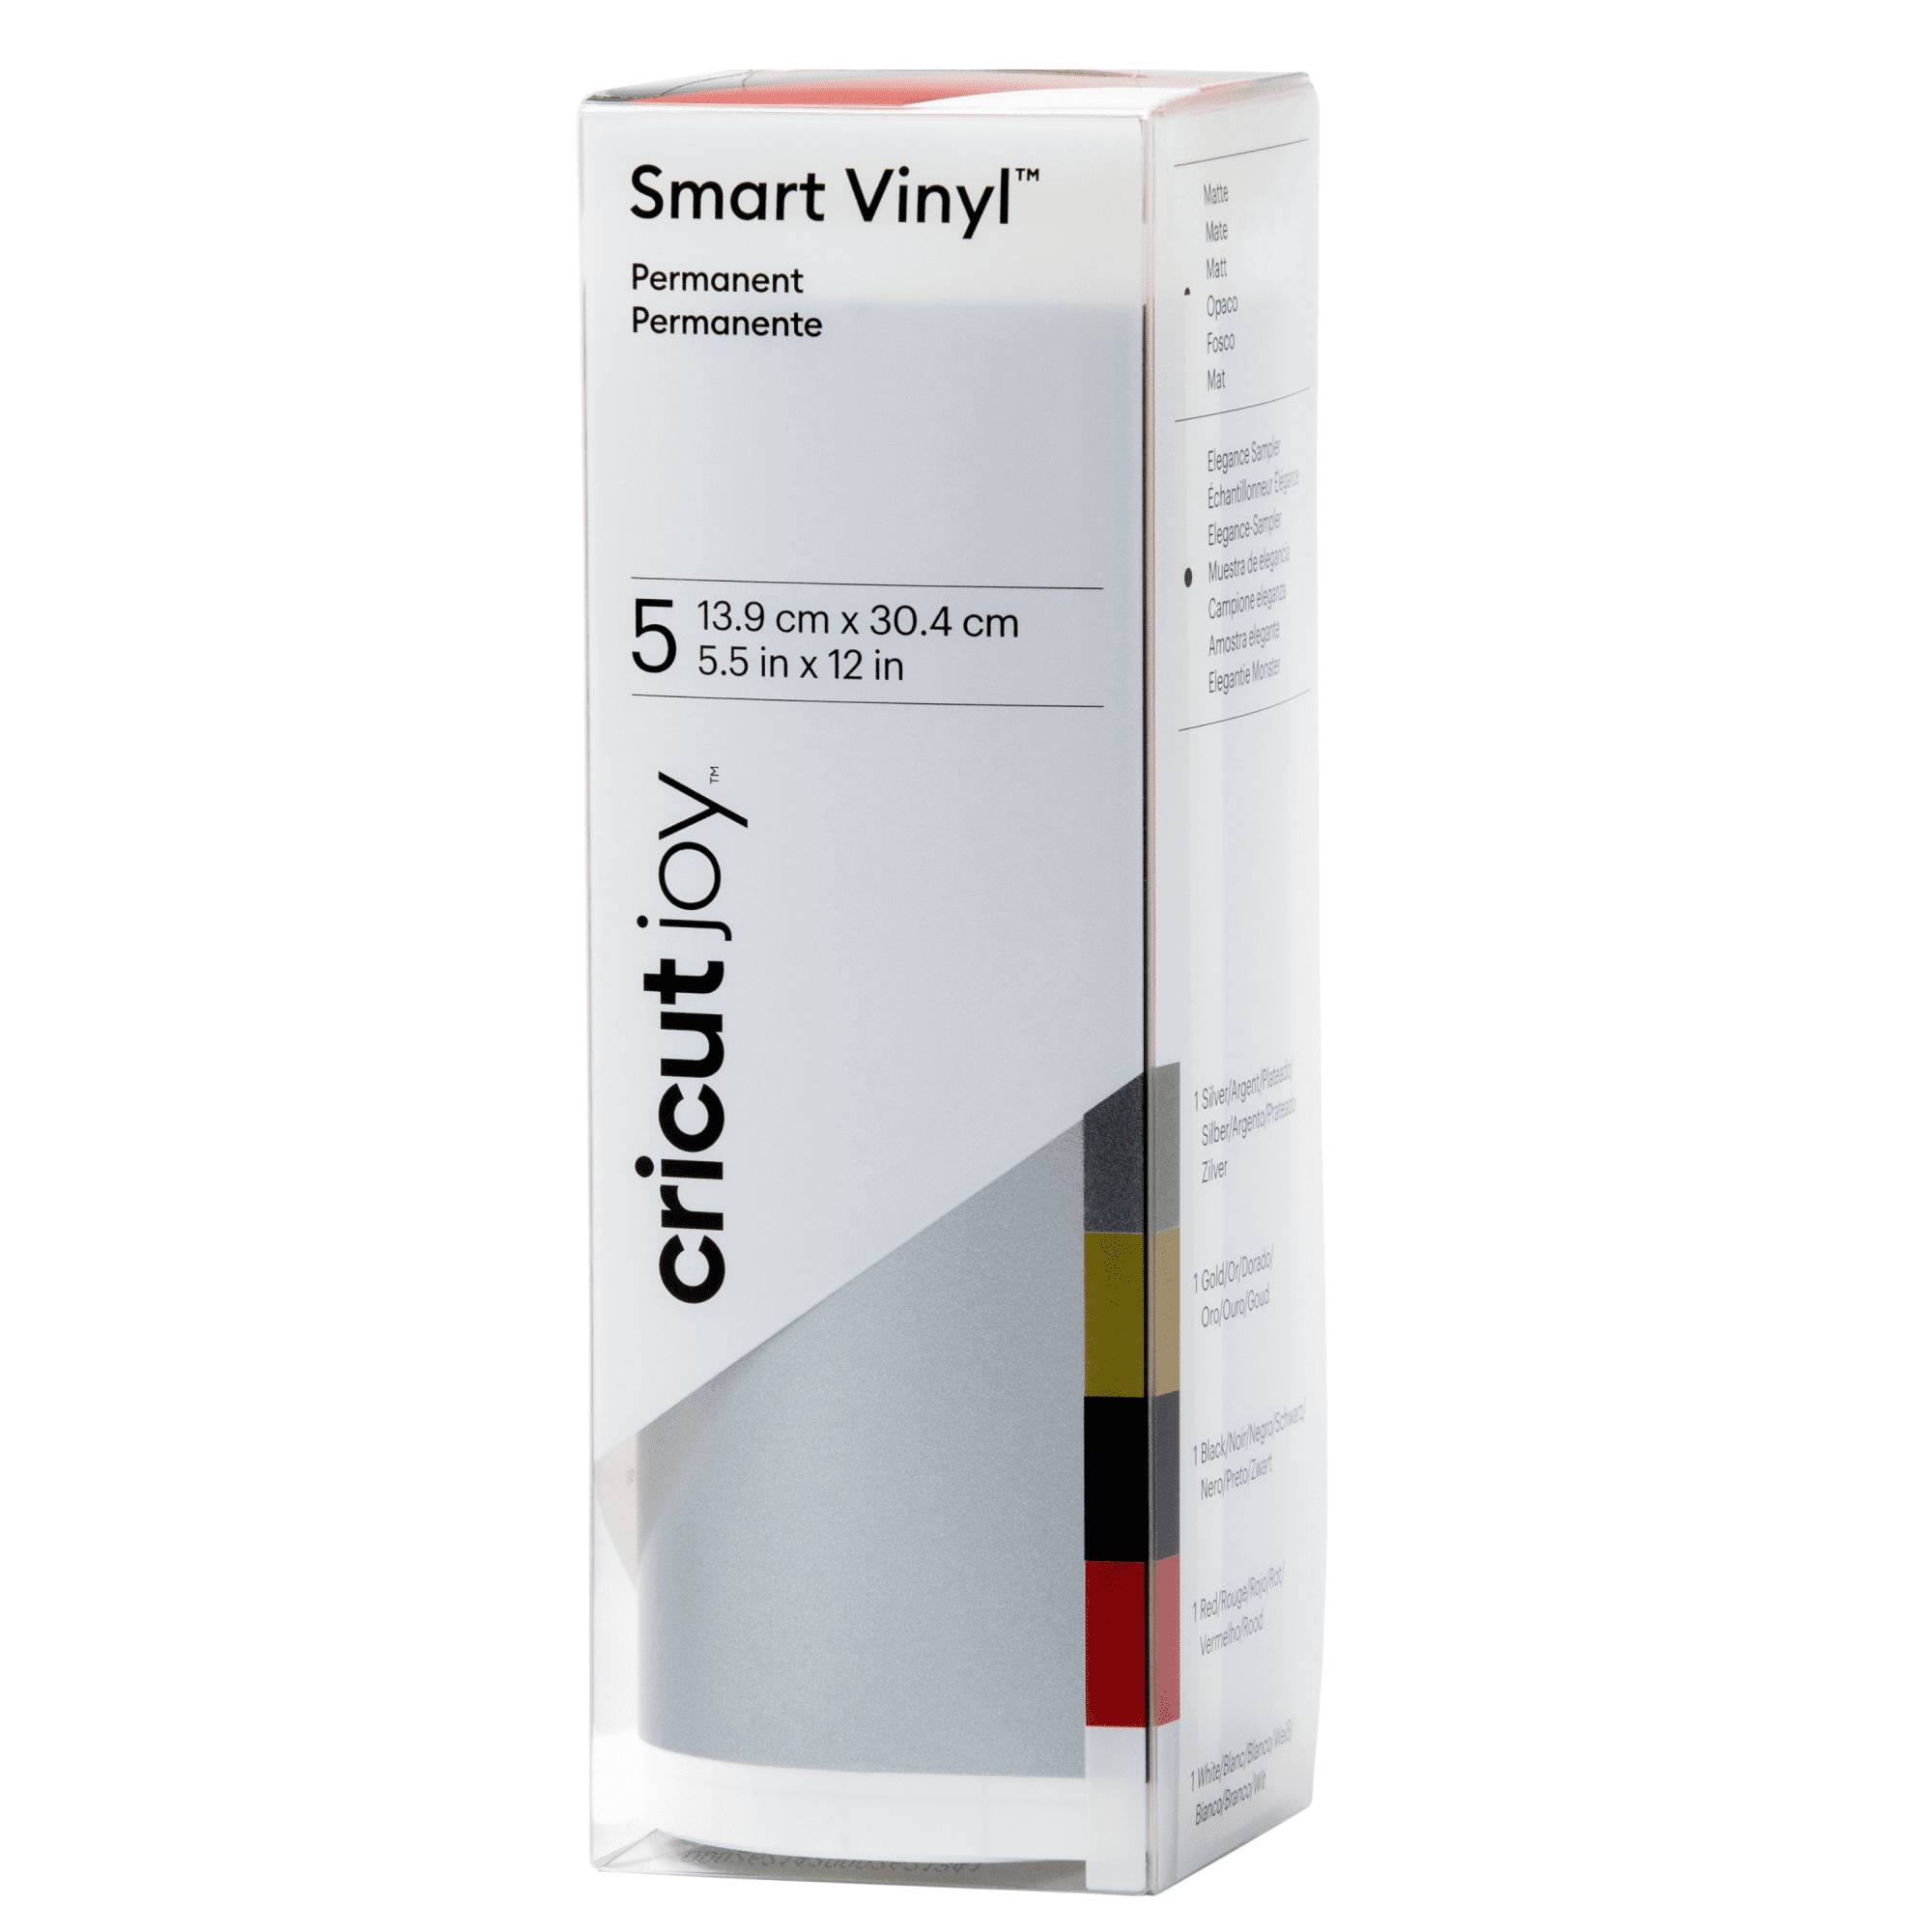 Cricut Joy Permanent Smart Vinyl - Teal, 5-1/2 x 48, Roll